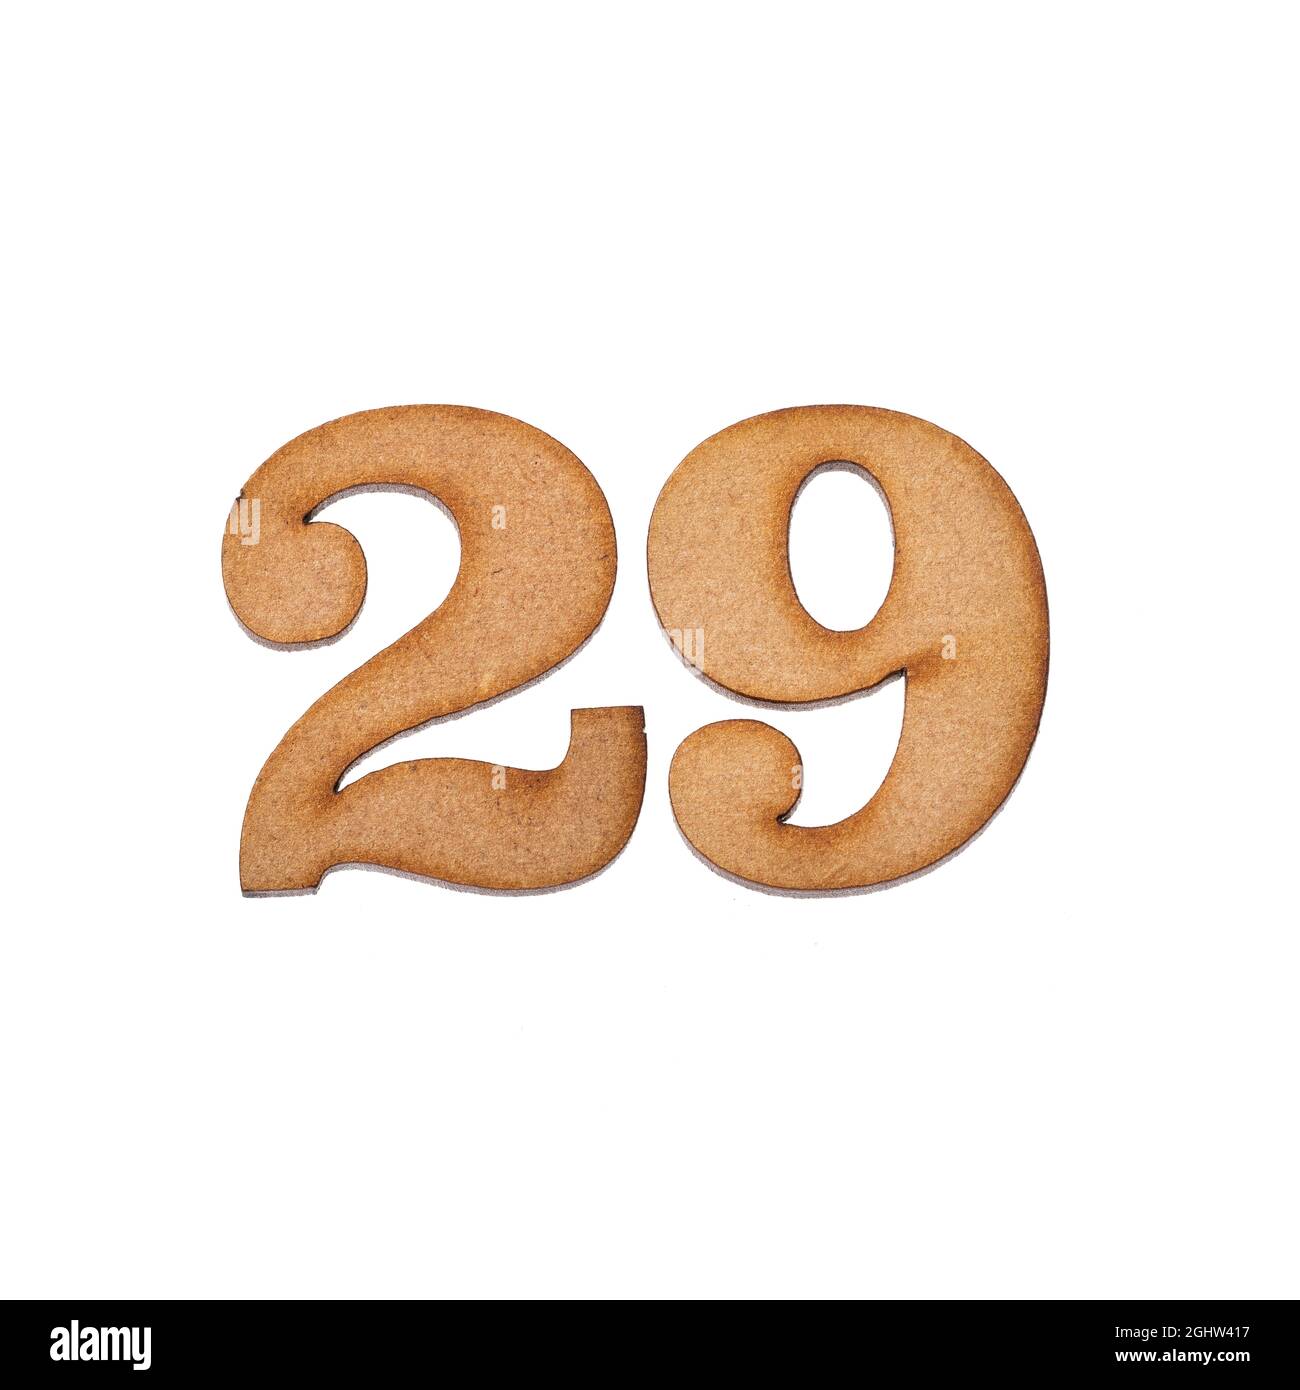 Number twenty-nine, 29 - Piece of wood isolated on white background Stock Photo